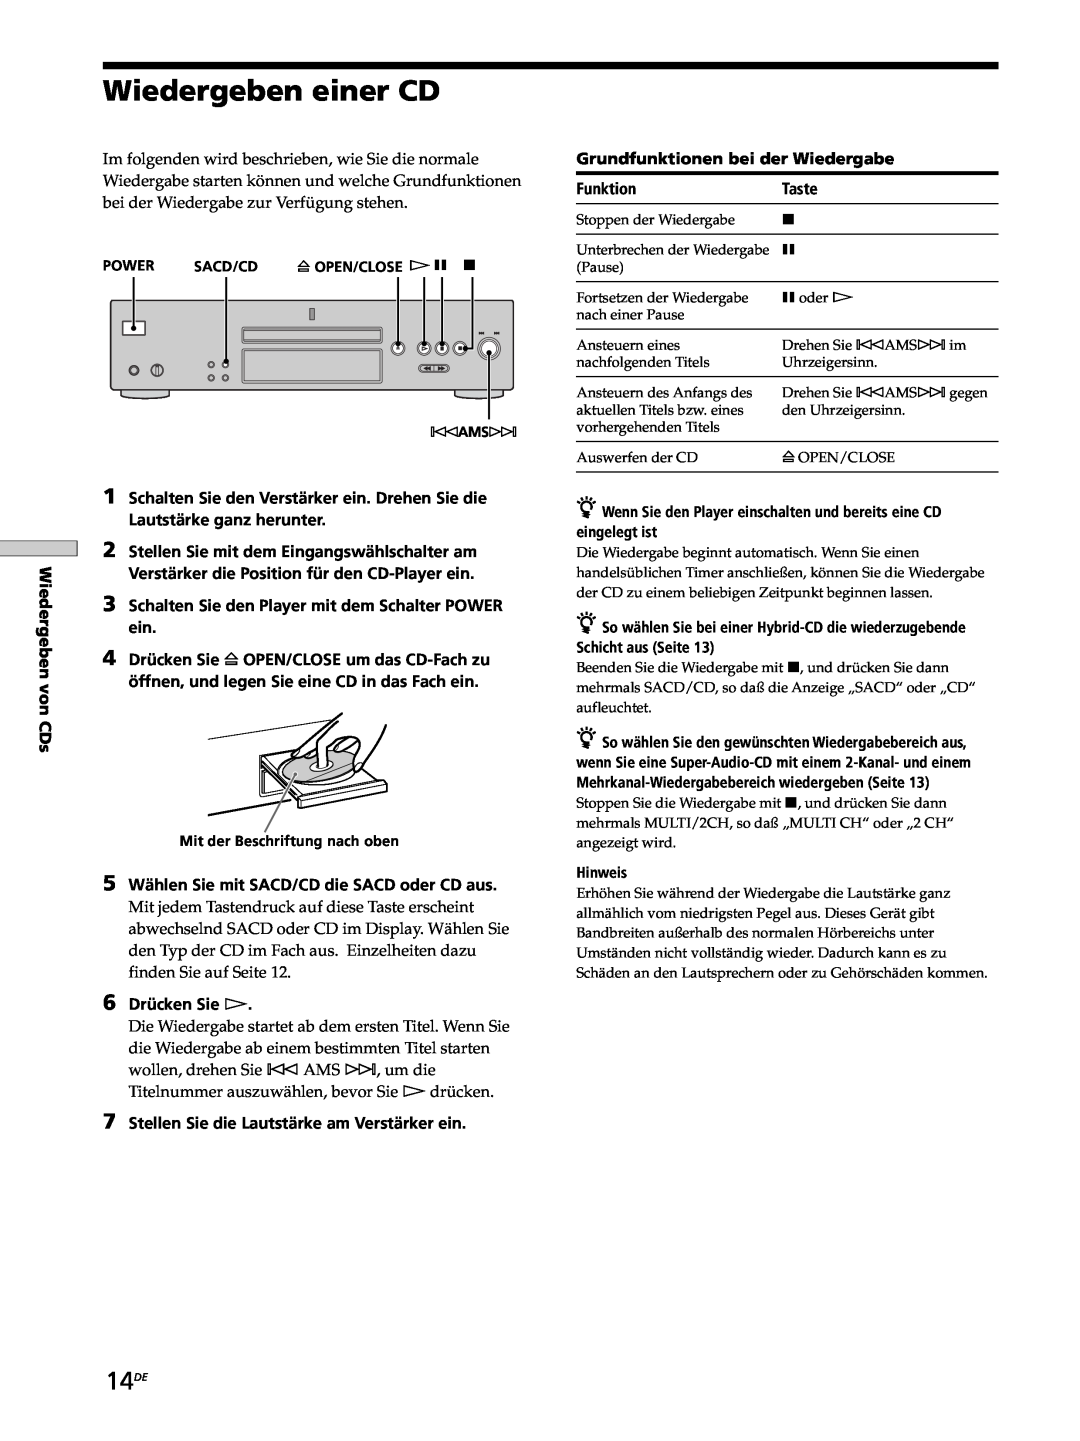 Sony SCD-XB770 operating instructions Wiedergeben einer CD, 14DE 